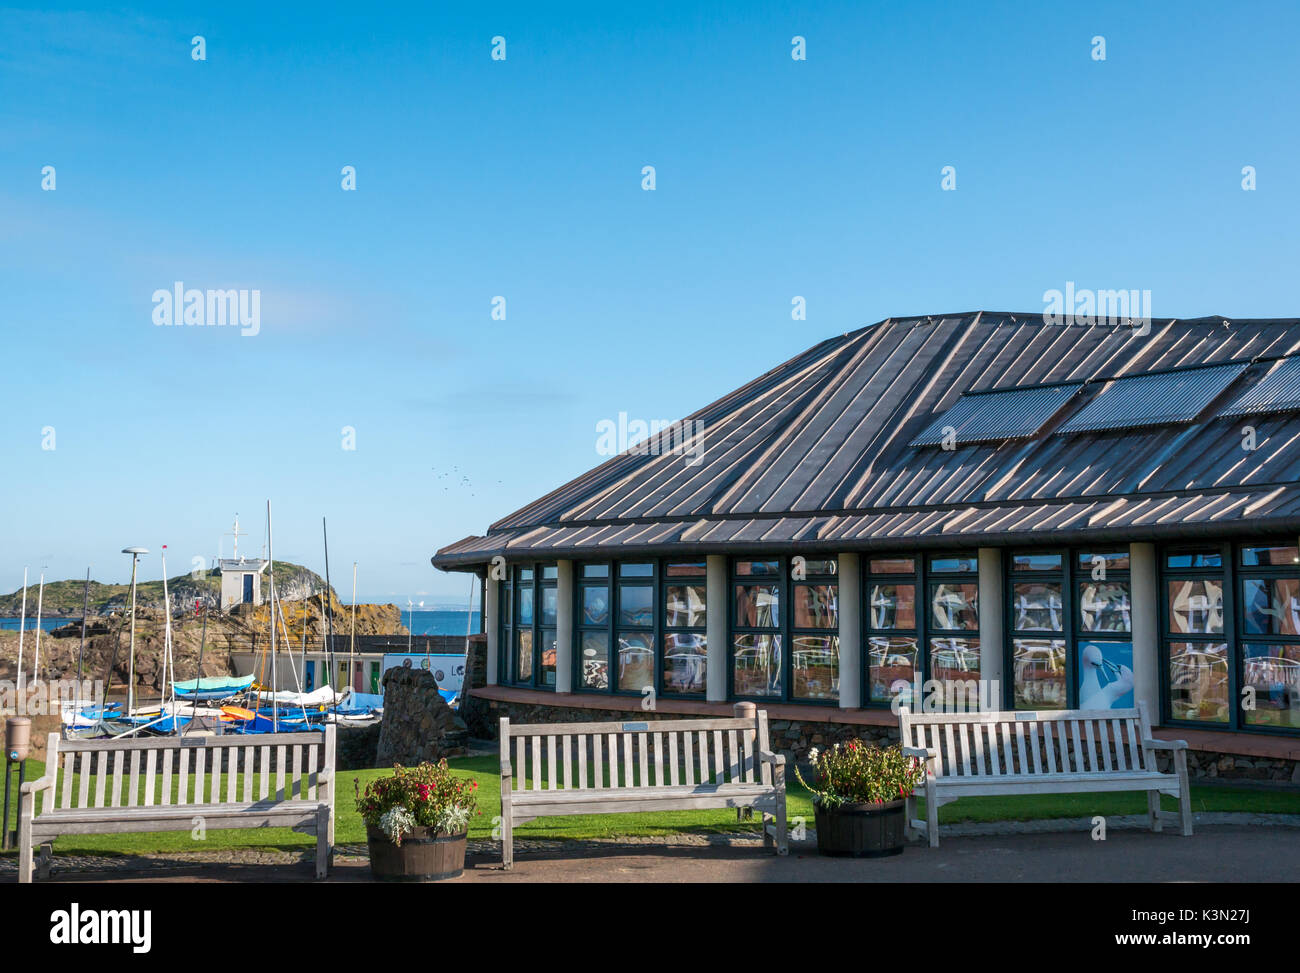 La scozzese centro di uccello, North Berwick, East Lothian, Scozia con panchine e porto dietro, sulla giornata soleggiata con cielo blu Foto Stock